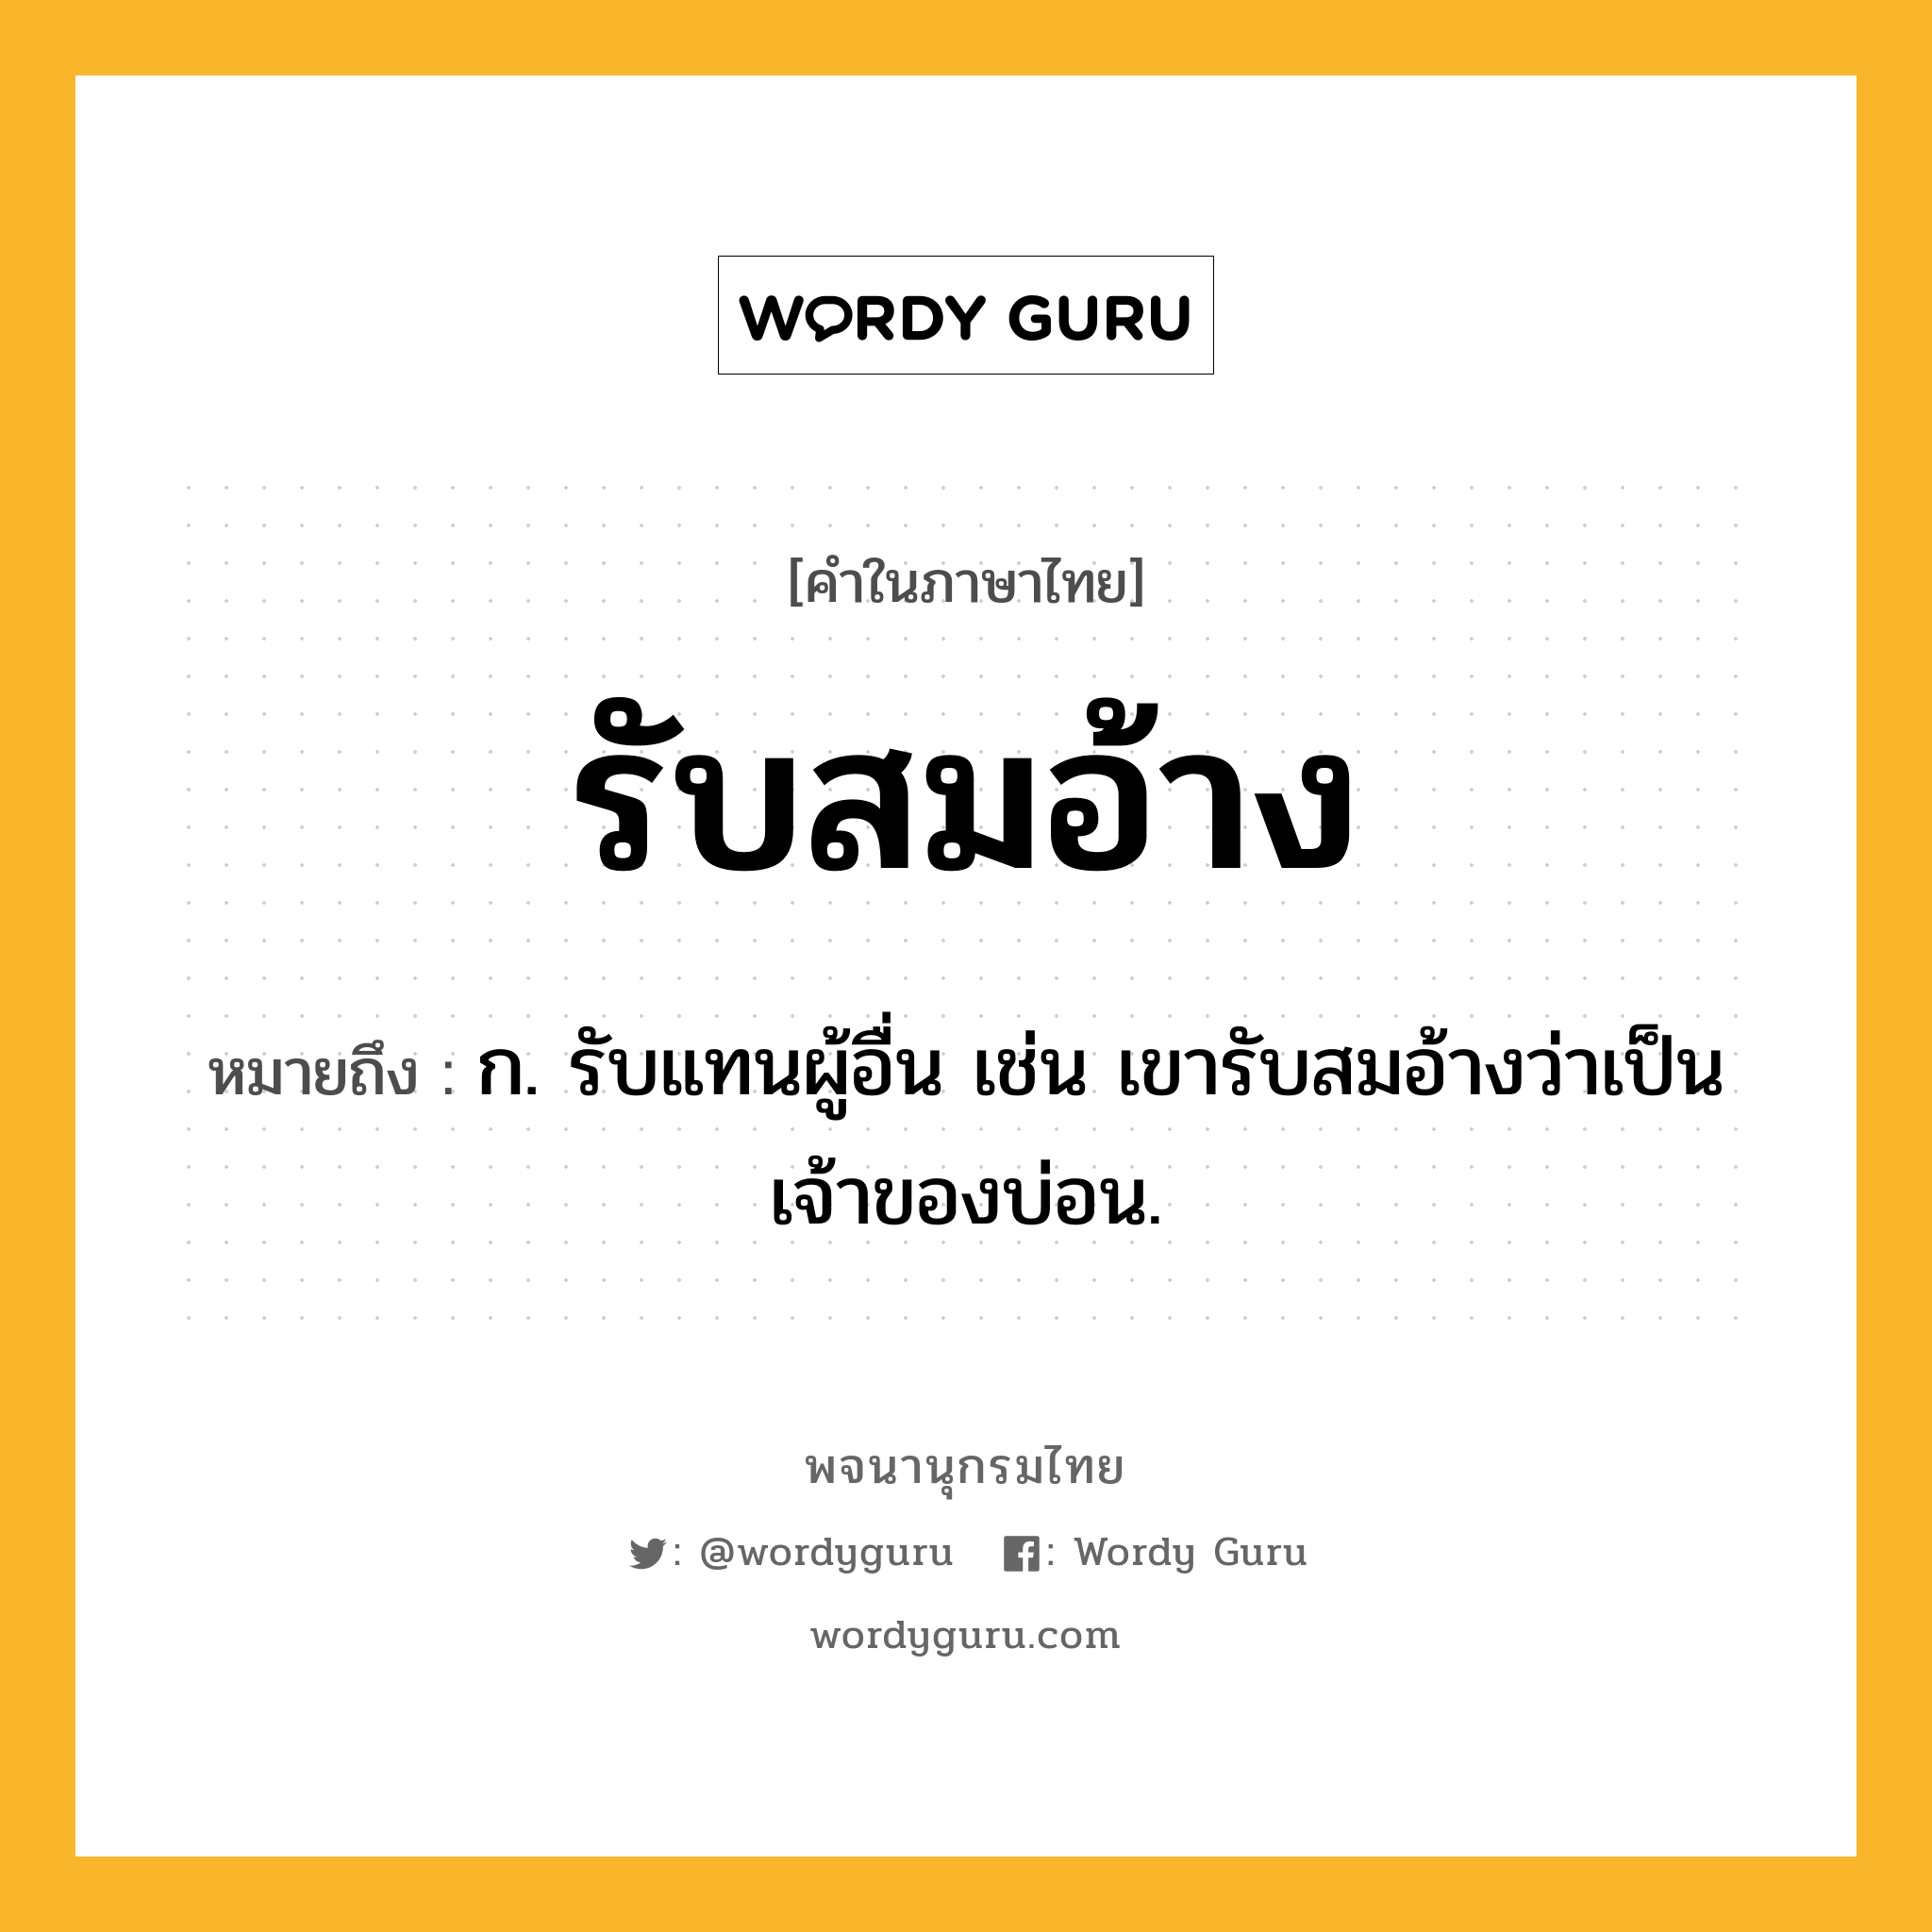 รับสมอ้าง ความหมาย หมายถึงอะไร?, คำในภาษาไทย รับสมอ้าง หมายถึง ก. รับแทนผู้อื่น เช่น เขารับสมอ้างว่าเป็นเจ้าของบ่อน.